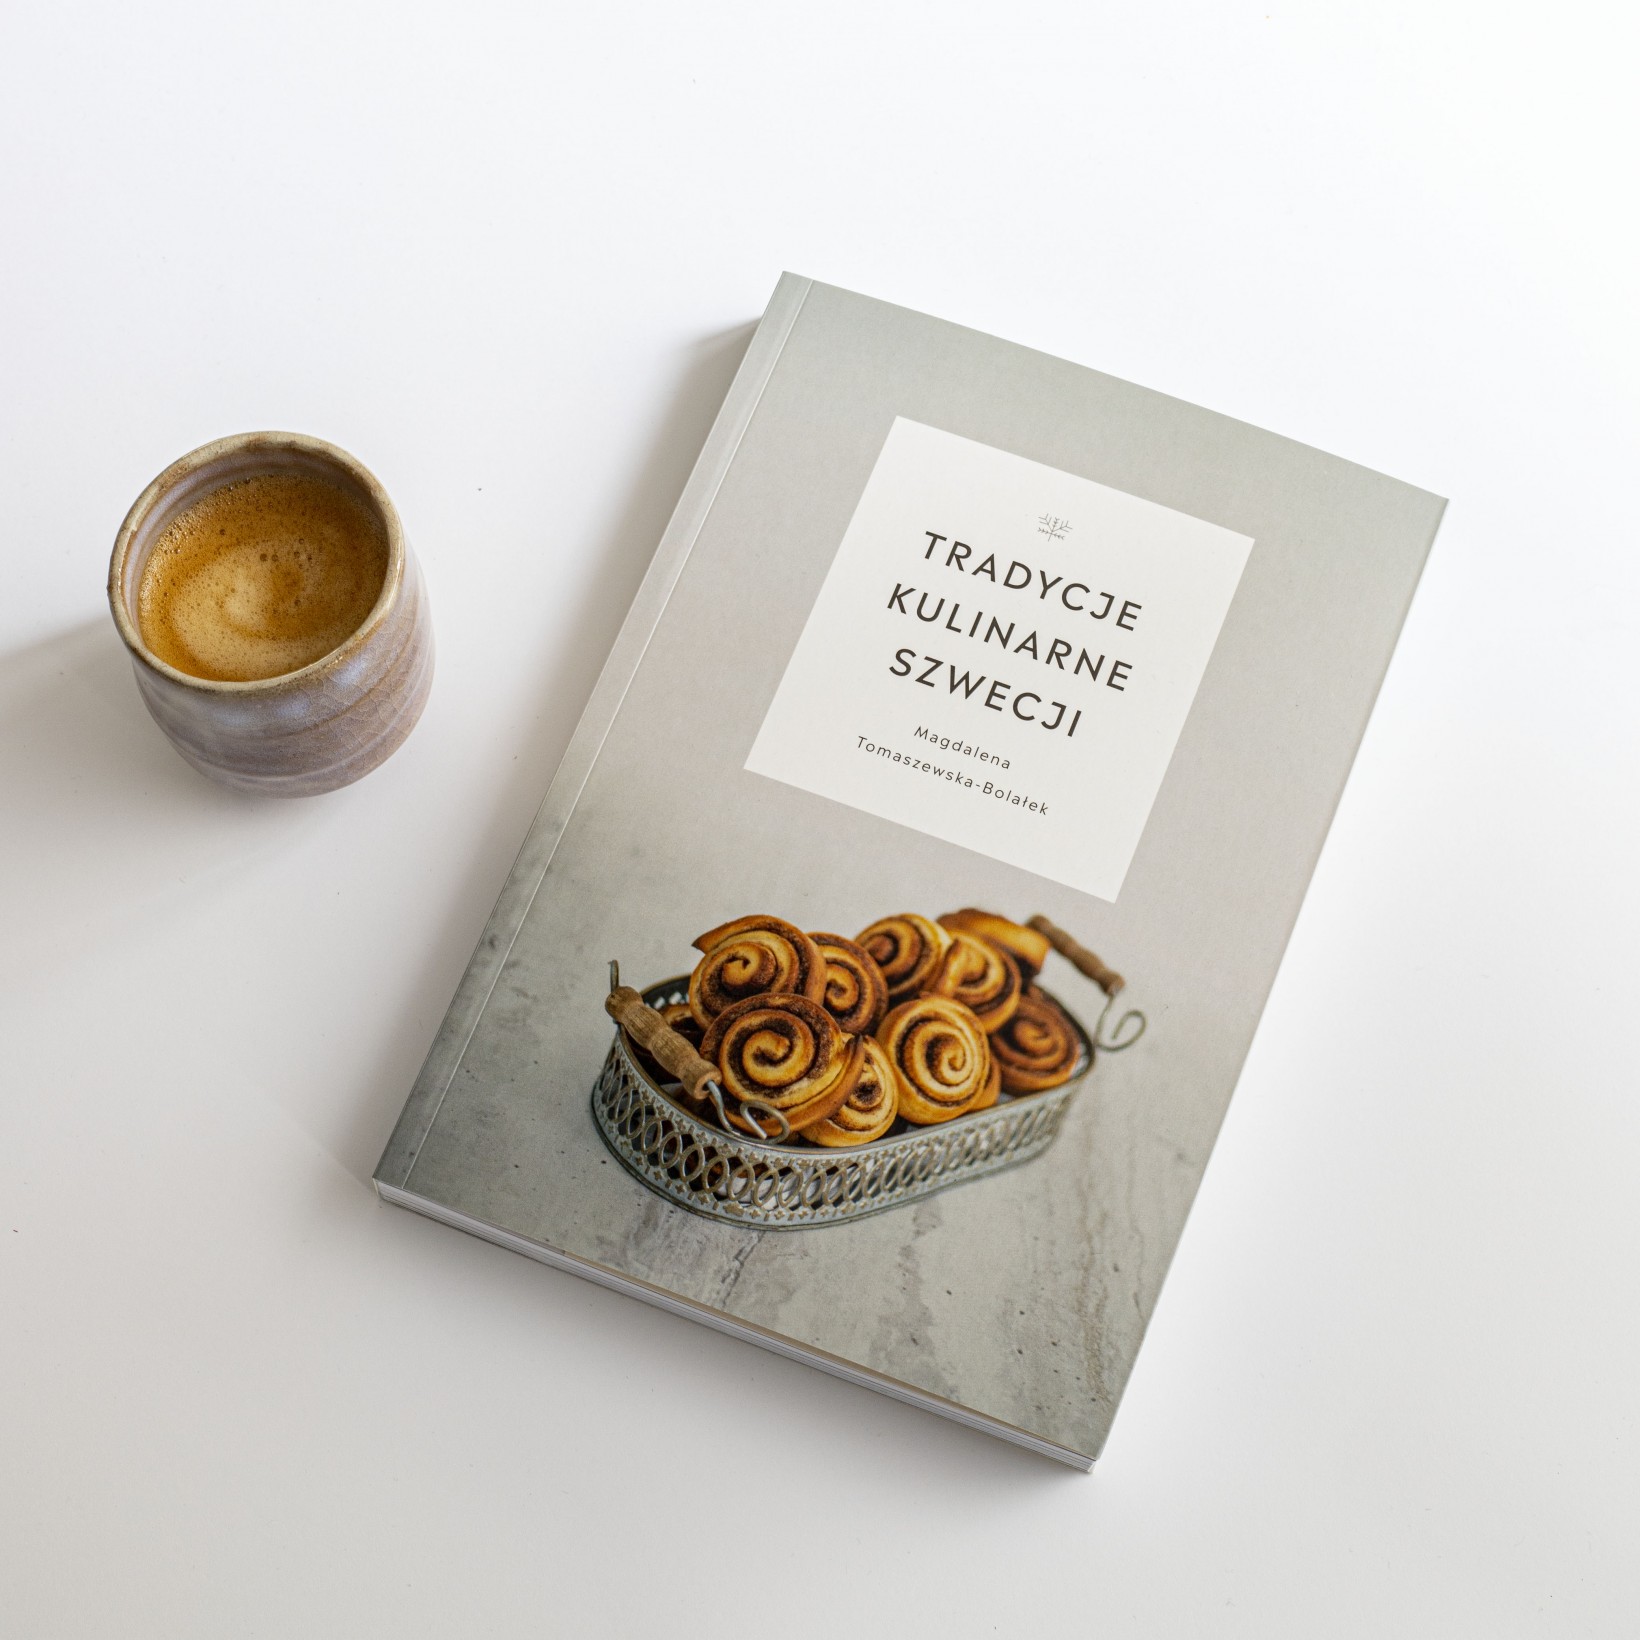 zdjęcie kubka z kawą i książki pt. "Tradycje kulinarne Szwecji"